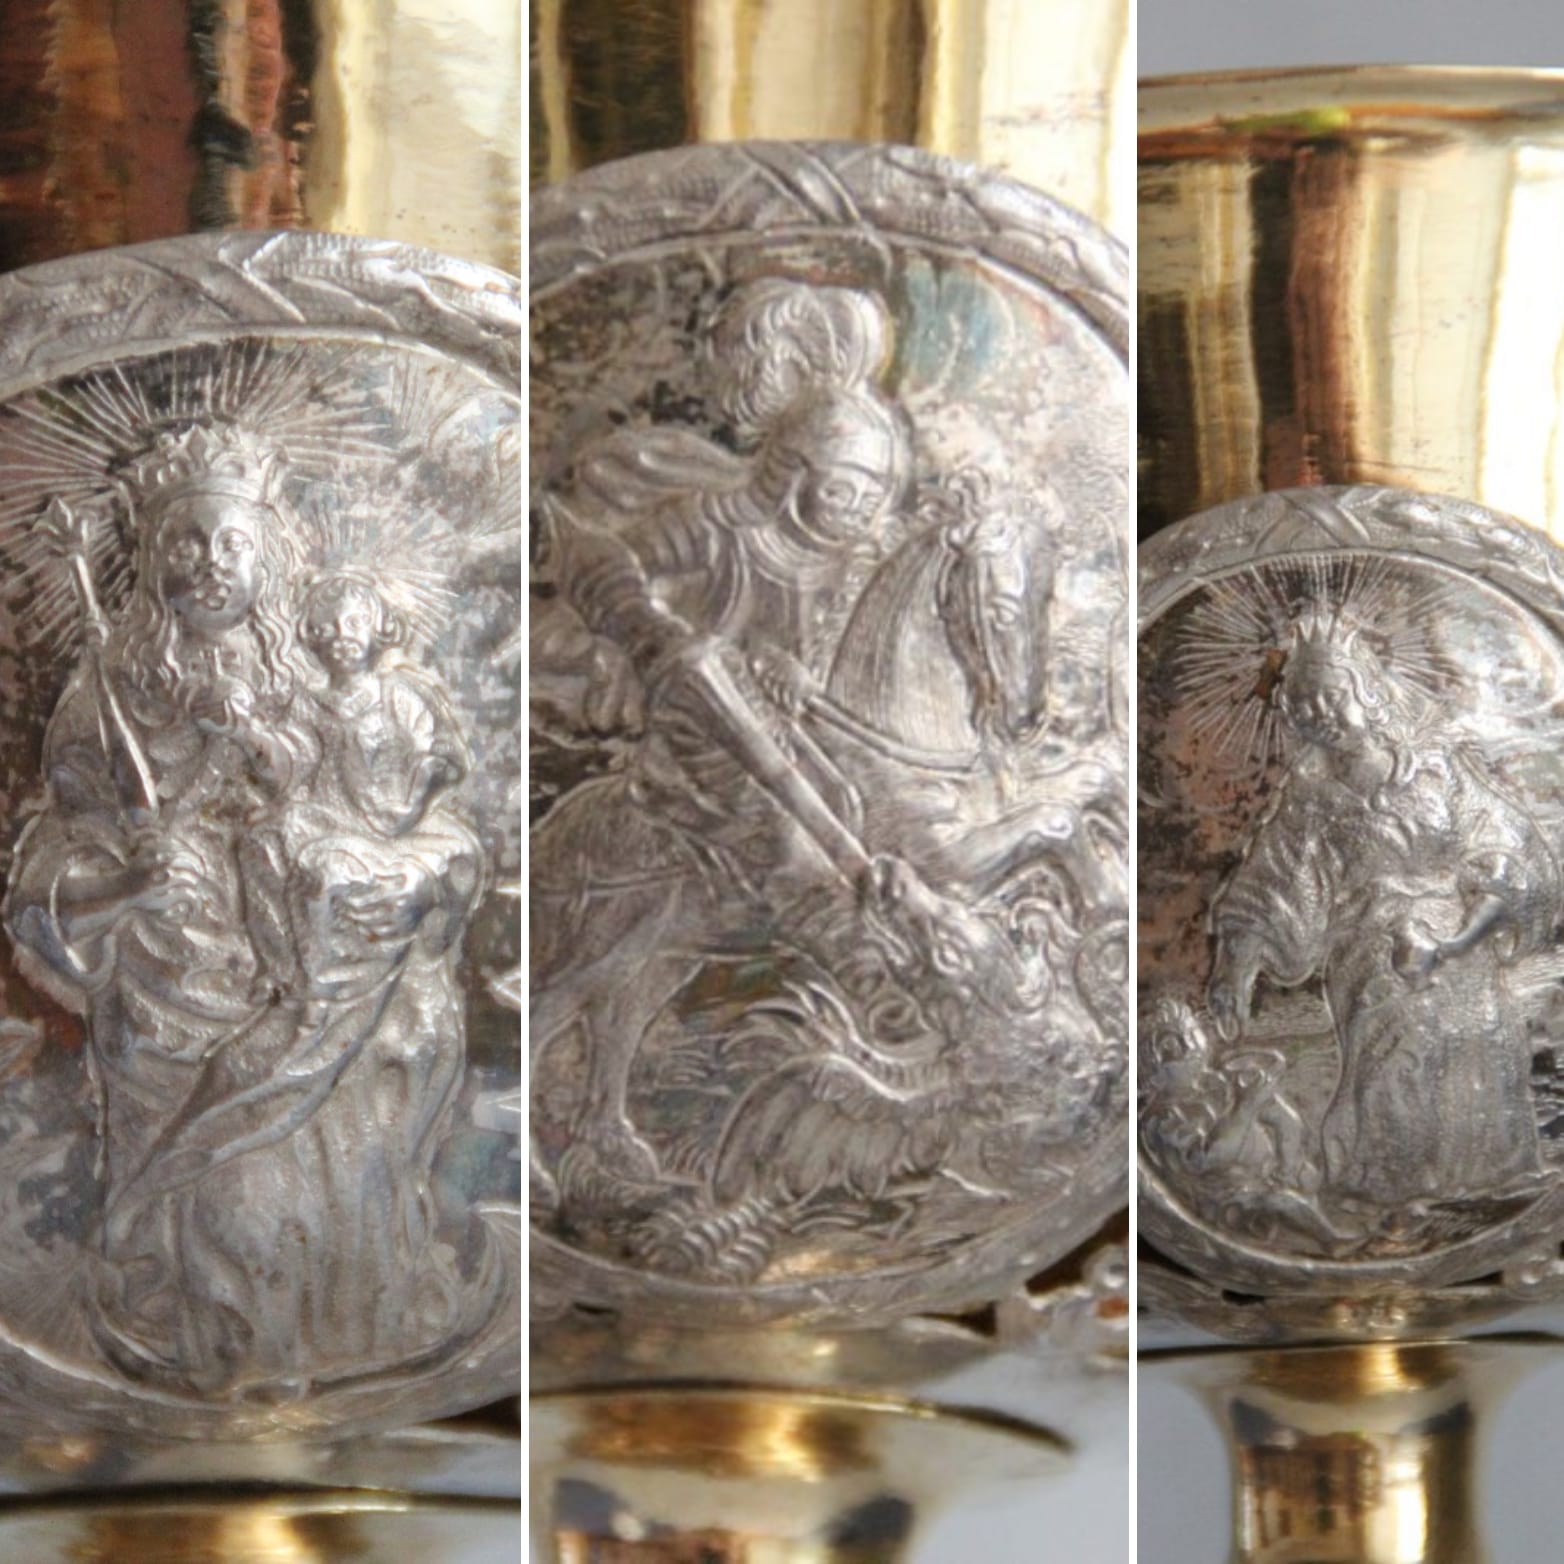 Das Bild besteht aus einer Kollage mit drei kleineren Bildern, die jeweils abgebildete Darstellungen auf einem Messkelch der drei Deutschordensheiligen zeigen.